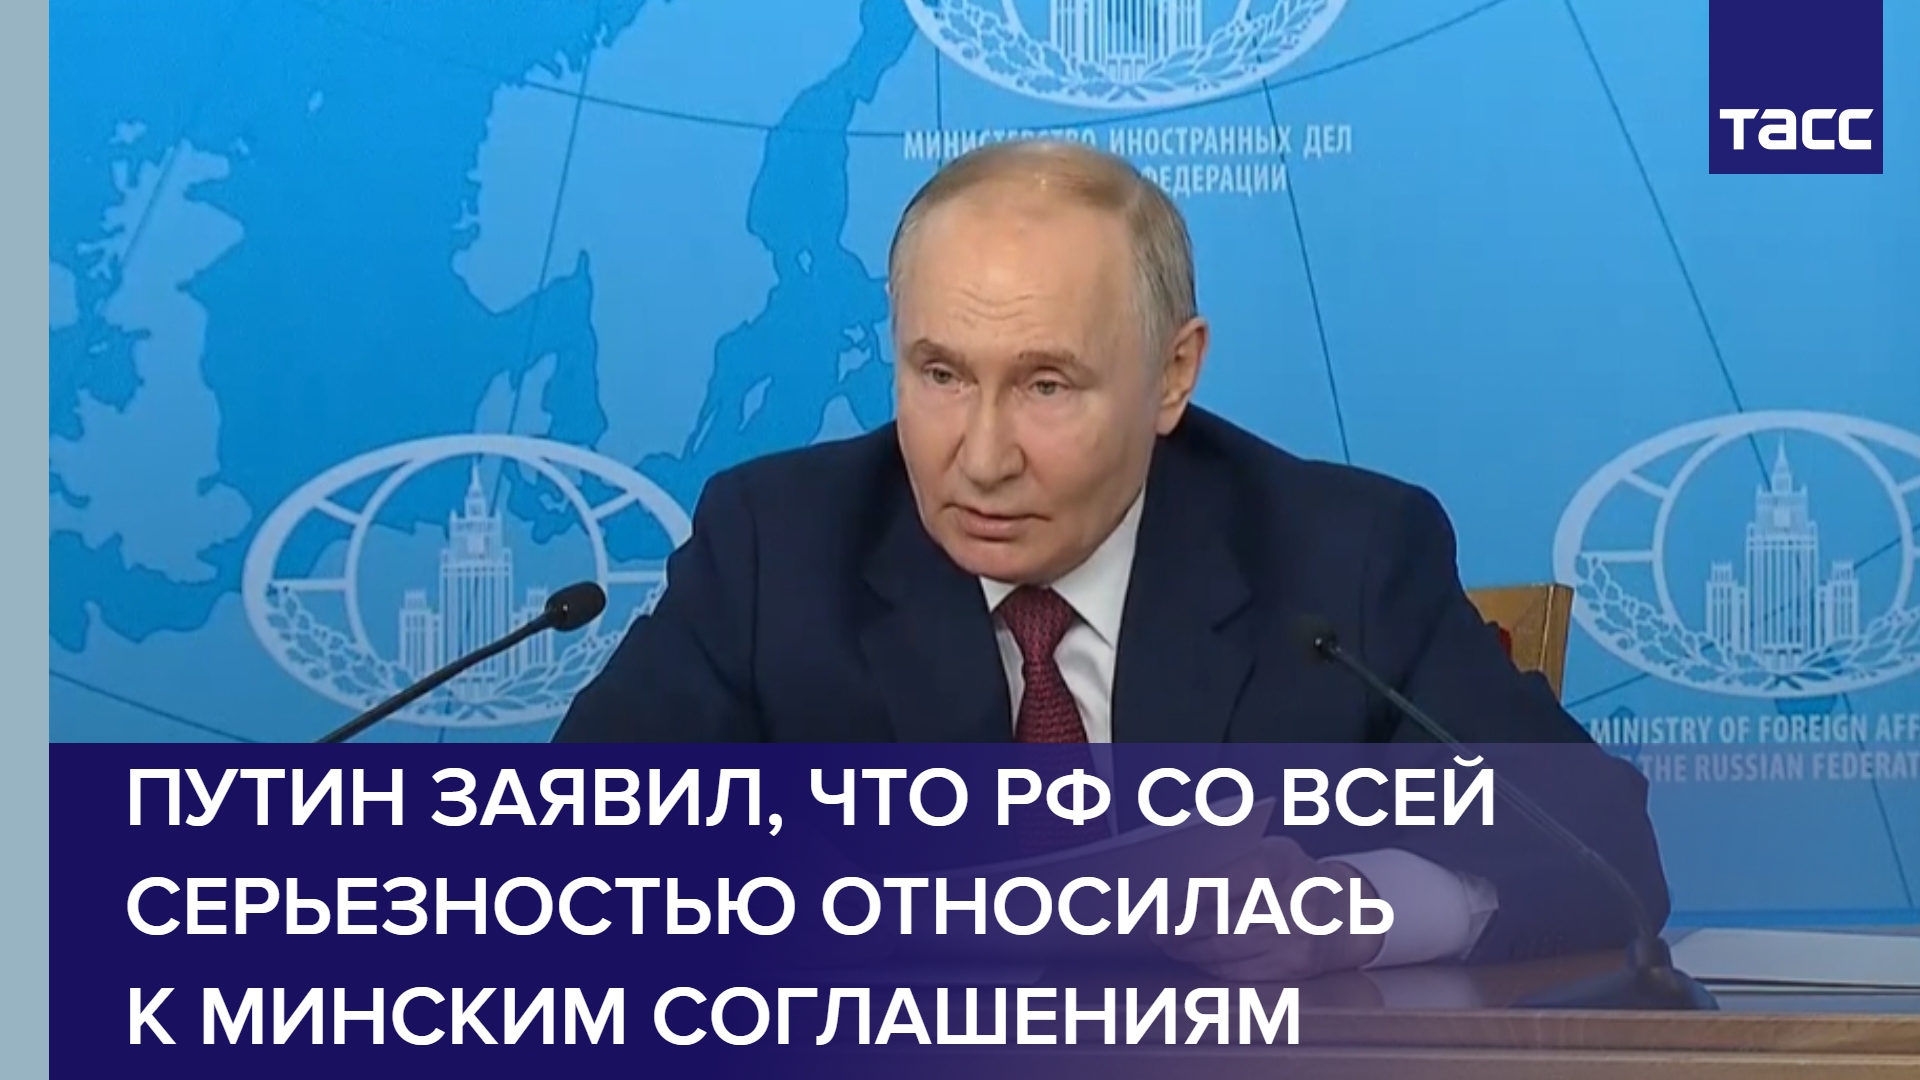 Путин заявил, что РФ со всей серьезностью относилась к минским соглашениям